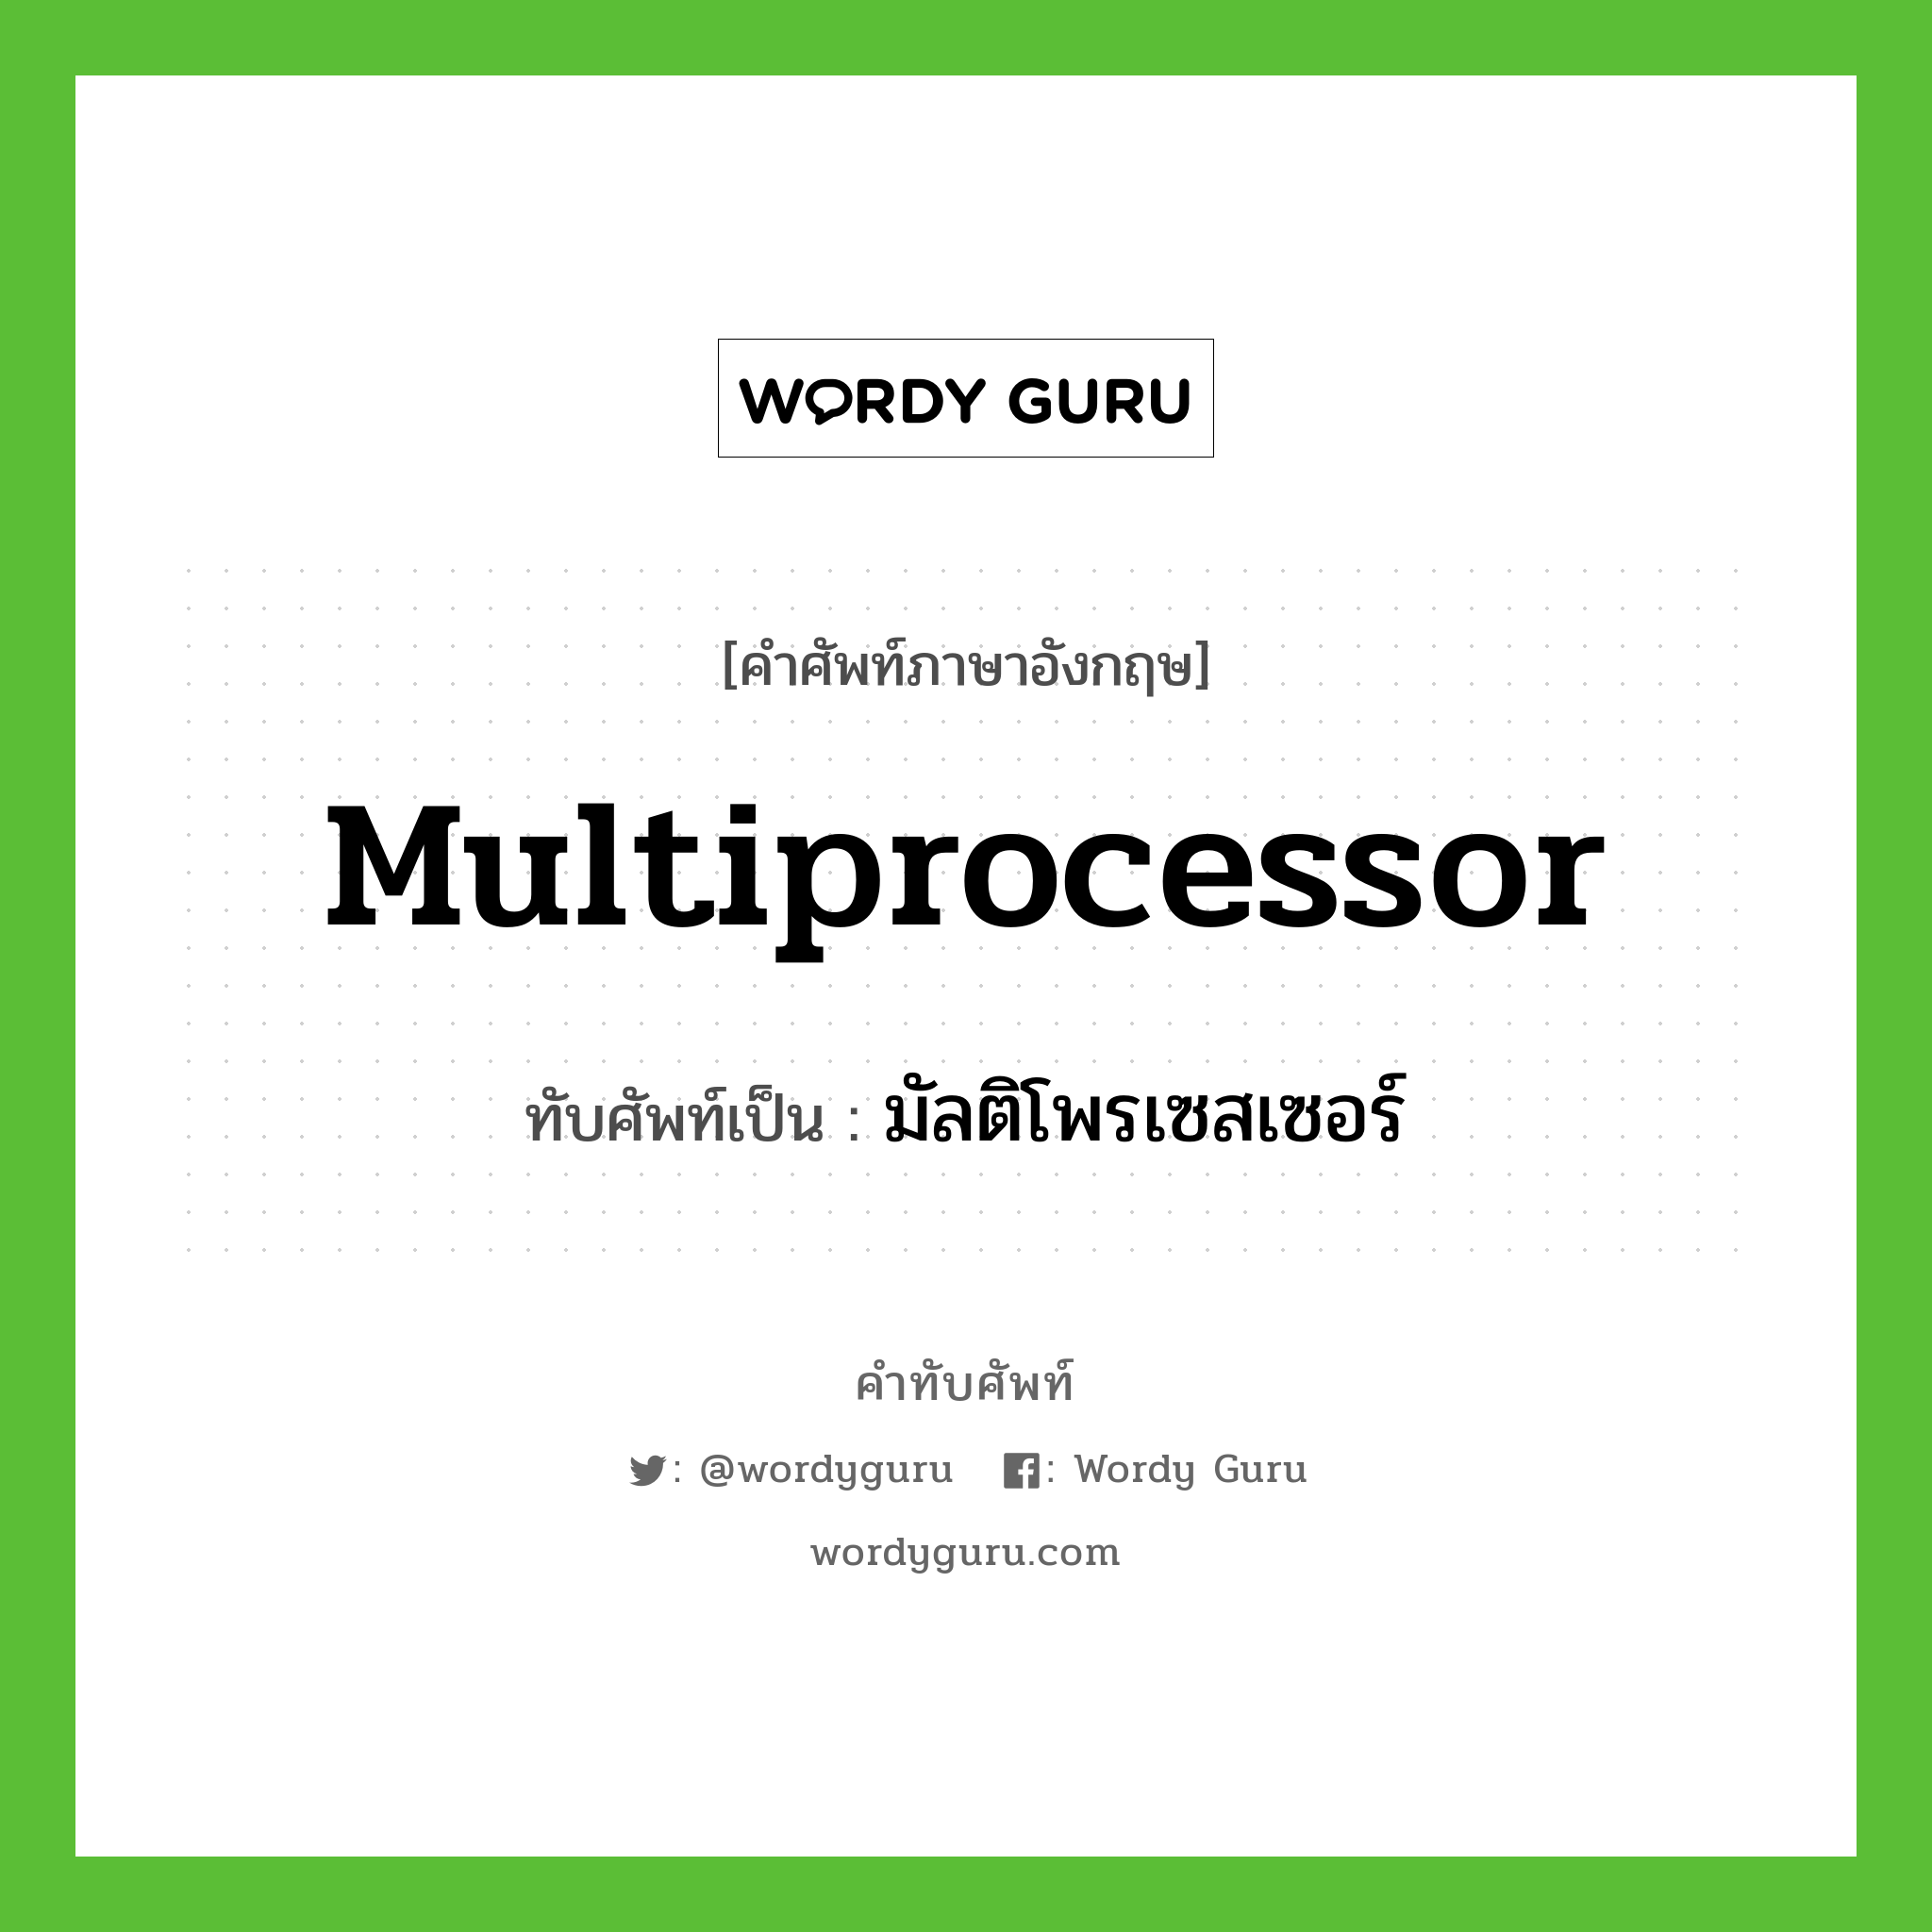 มัลติโพรเซสเซอร์ เขียนอย่างไร?, คำศัพท์ภาษาอังกฤษ มัลติโพรเซสเซอร์ ทับศัพท์เป็น multiprocessor